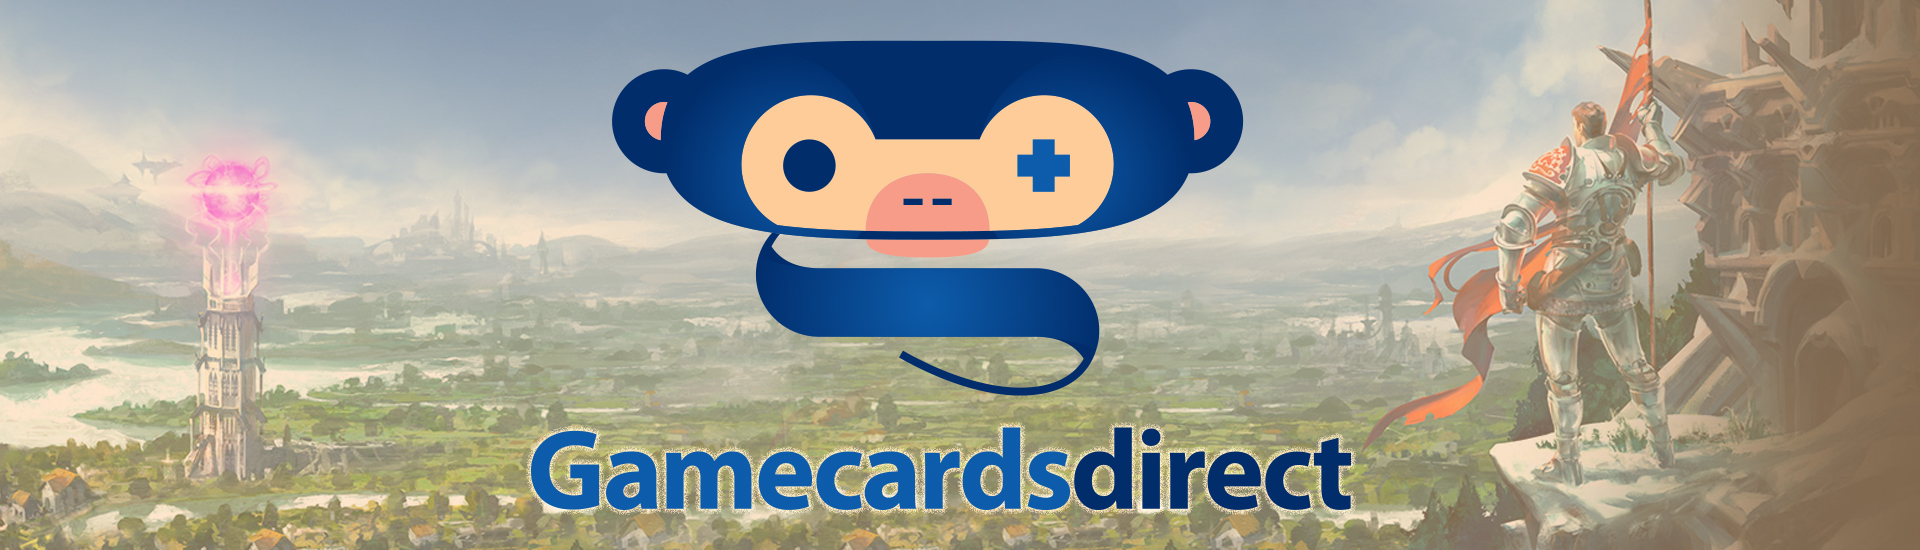 Gamecardsdirect